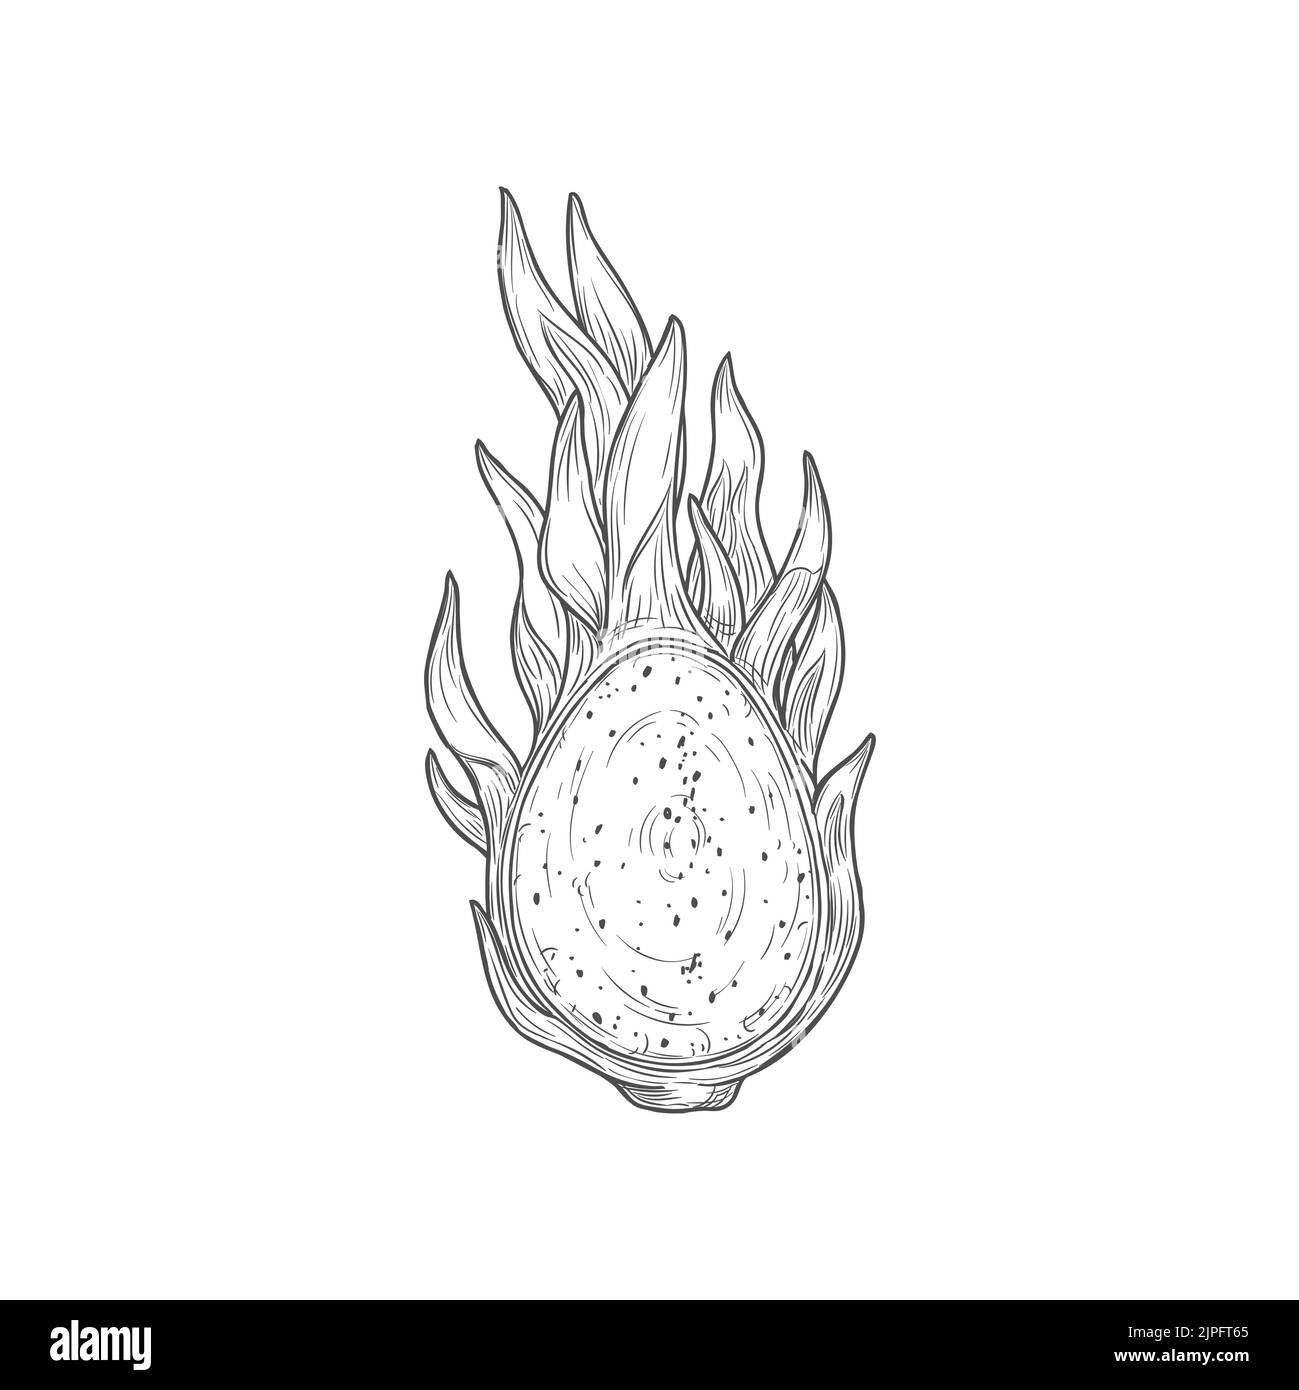 Pitaya mit Samen Drachenfrucht auf halb isolierter monochromer Ikone geschnitten. Vektor-Skizze von reifen Pitahaya, saftigen tropischen vegetarischen Lebensmitteln, Lebensmittelprodukt. Pithaya, exotisches tropisches Dessert mit Drachenfrucht Stock Vektor